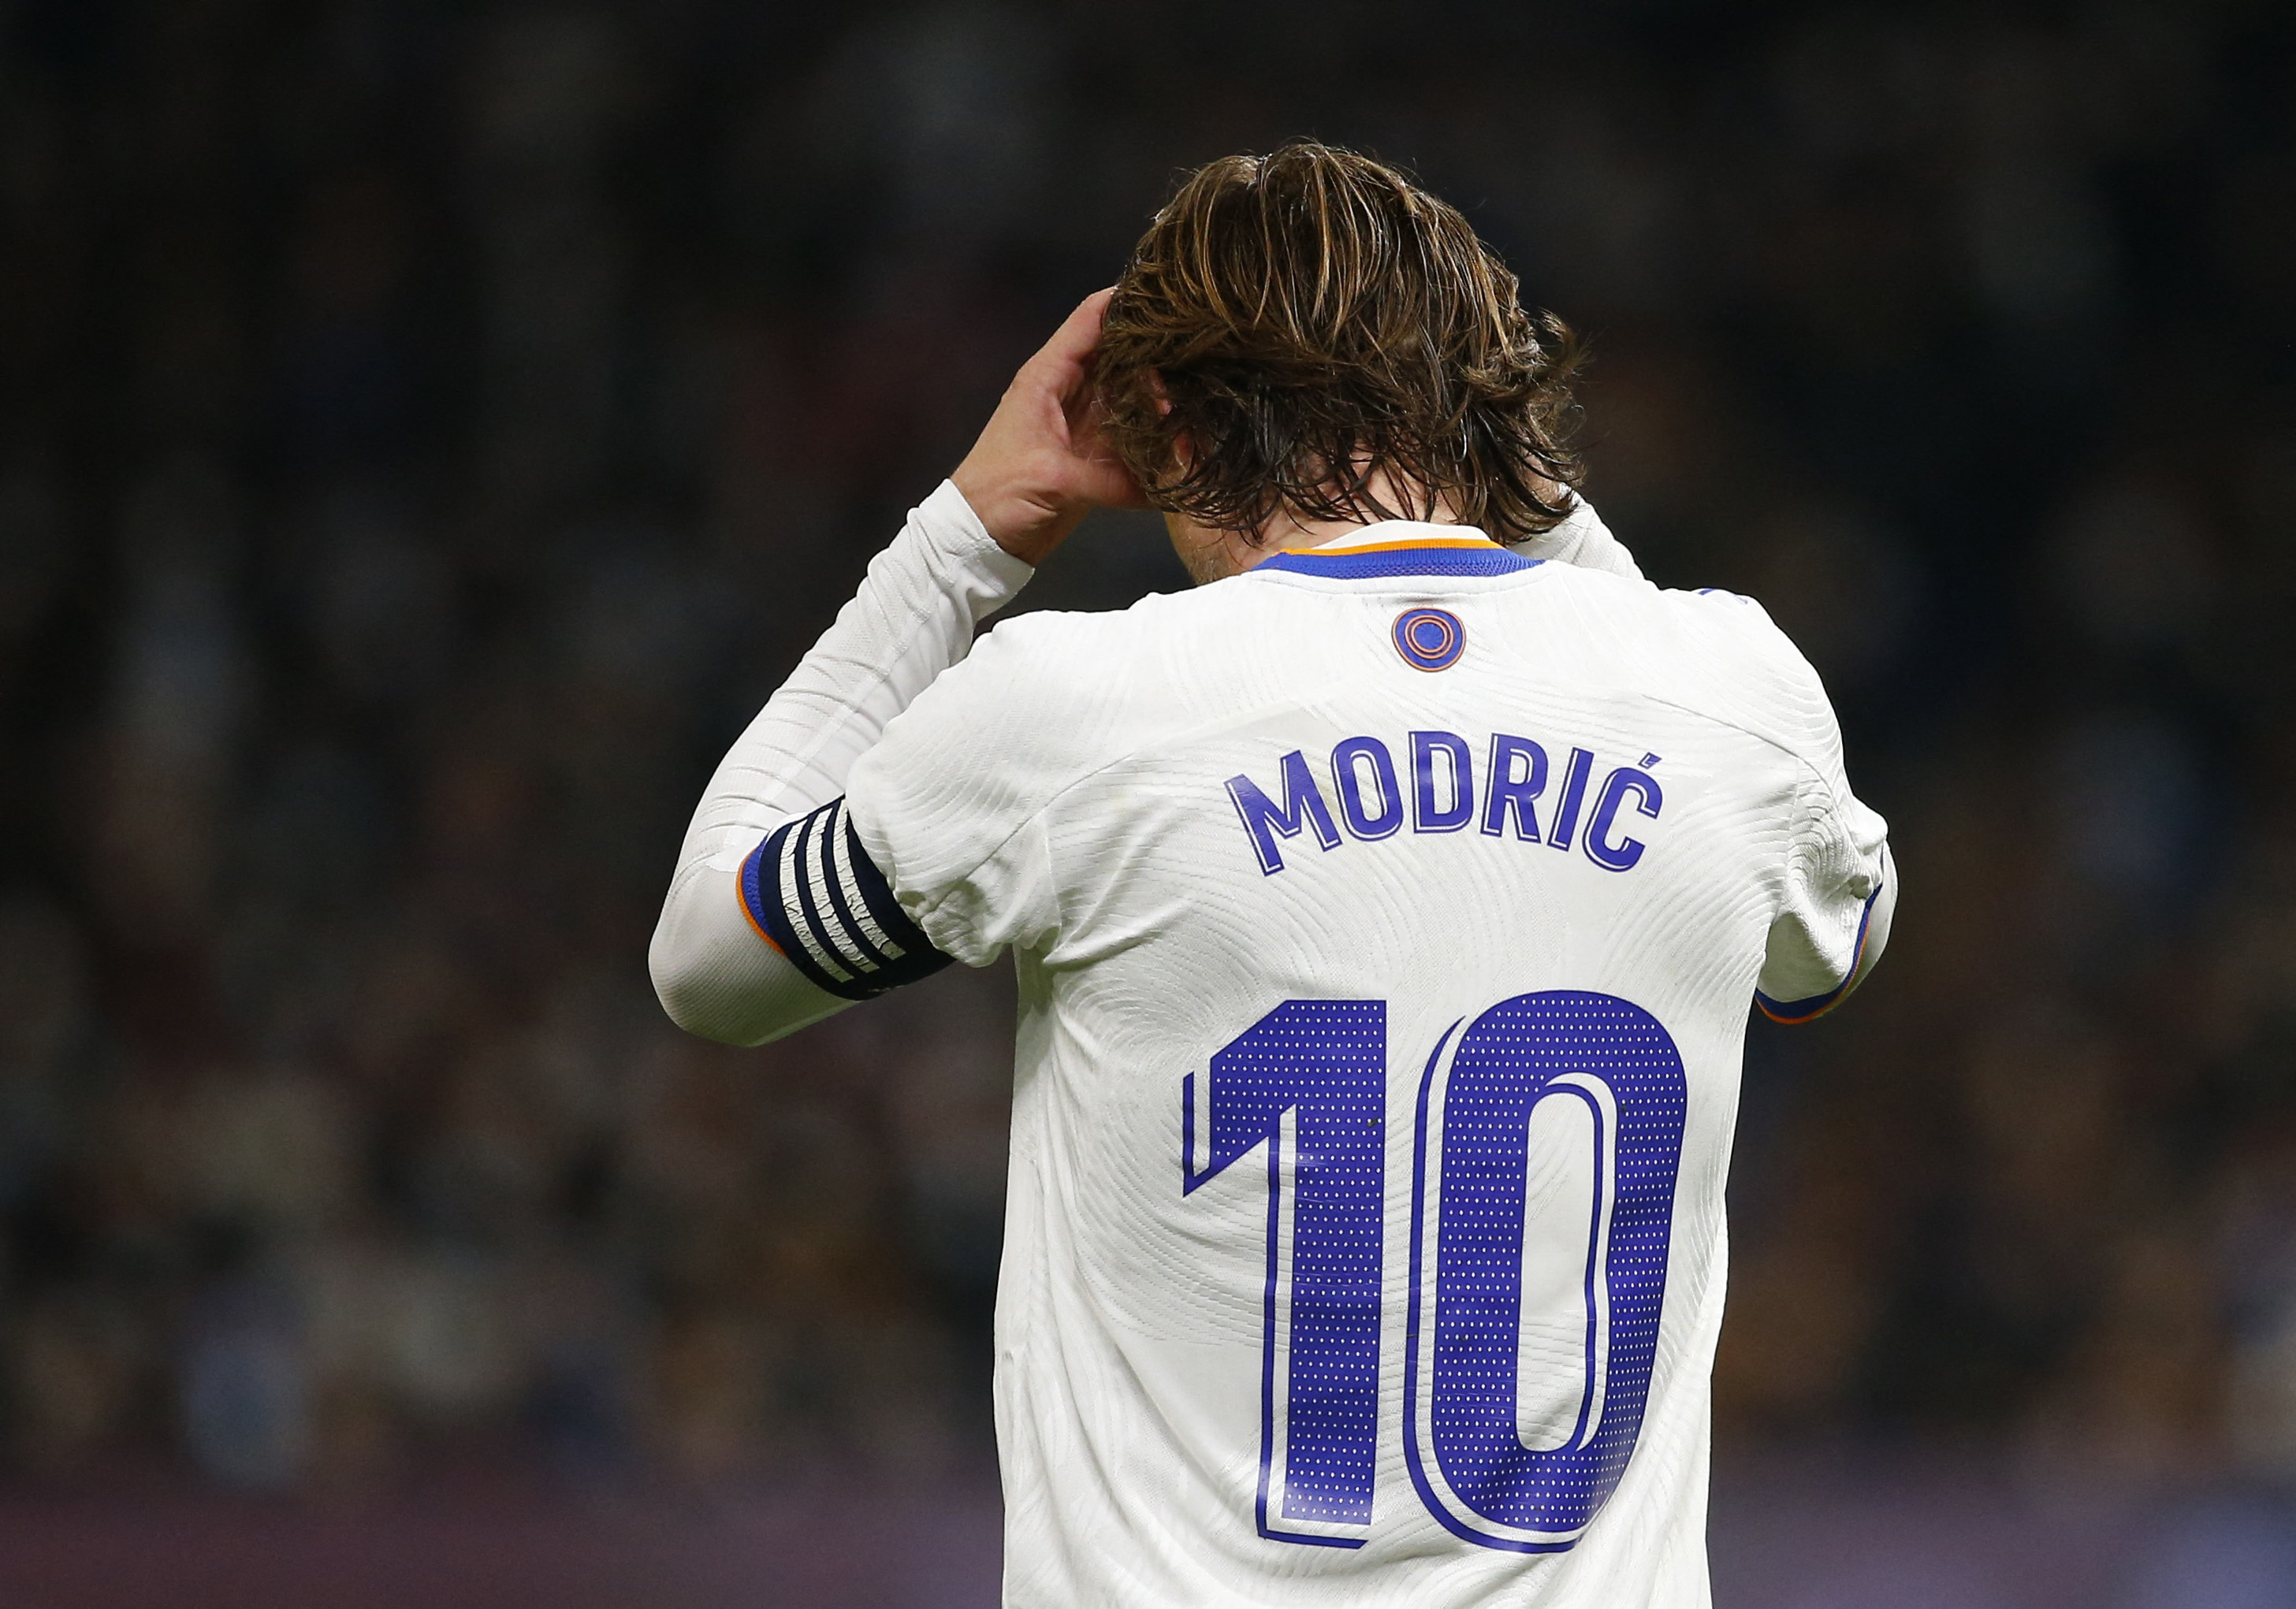 He reconocido banda Nombre provisional Modric y Marcelo, positivo por Covid en el Real Madrid | LaLiga Santander  2021 - 2022